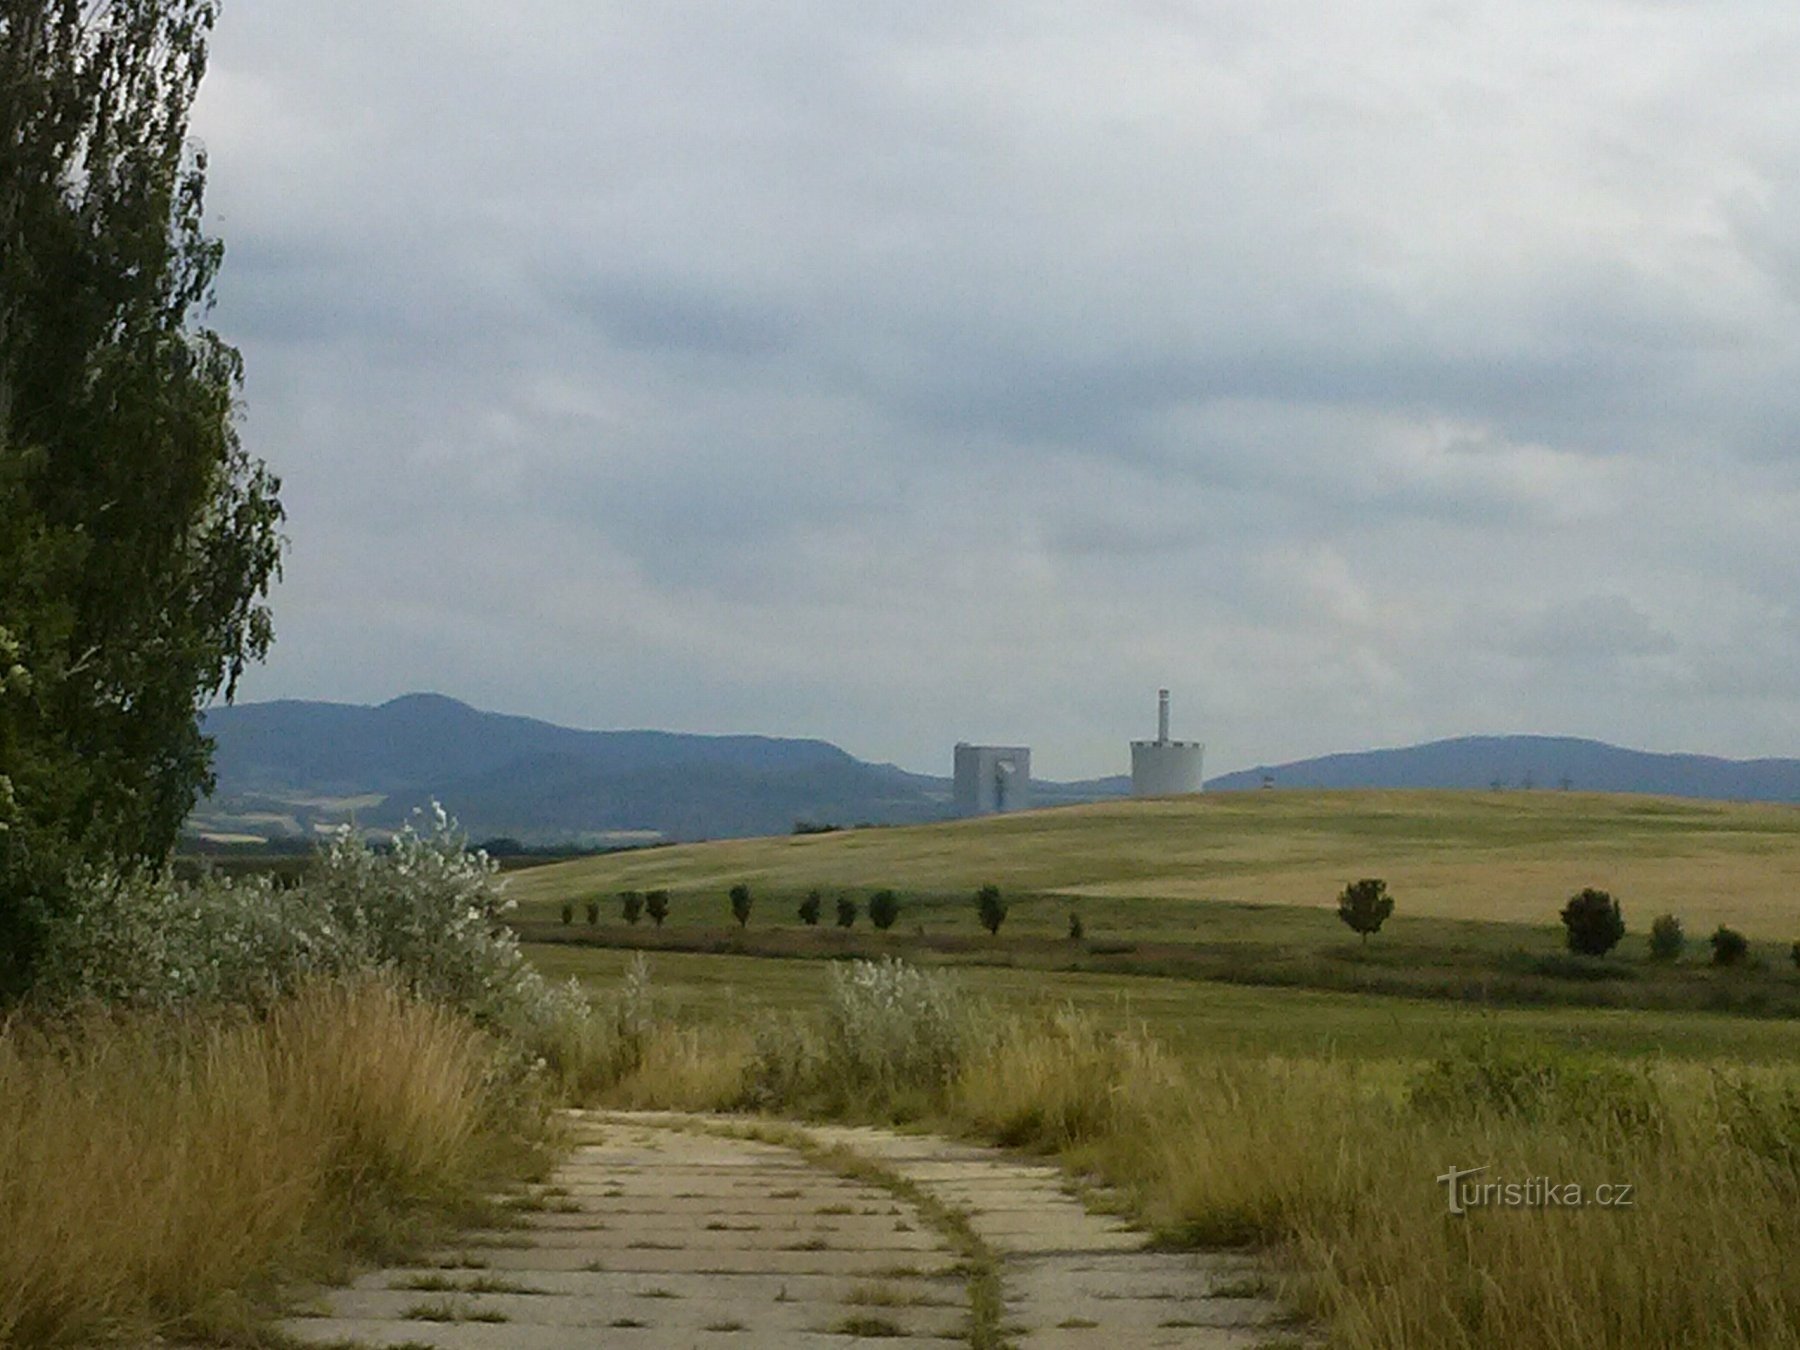 Widok na okolicę, wystają wieże elektrowni Chotějovice